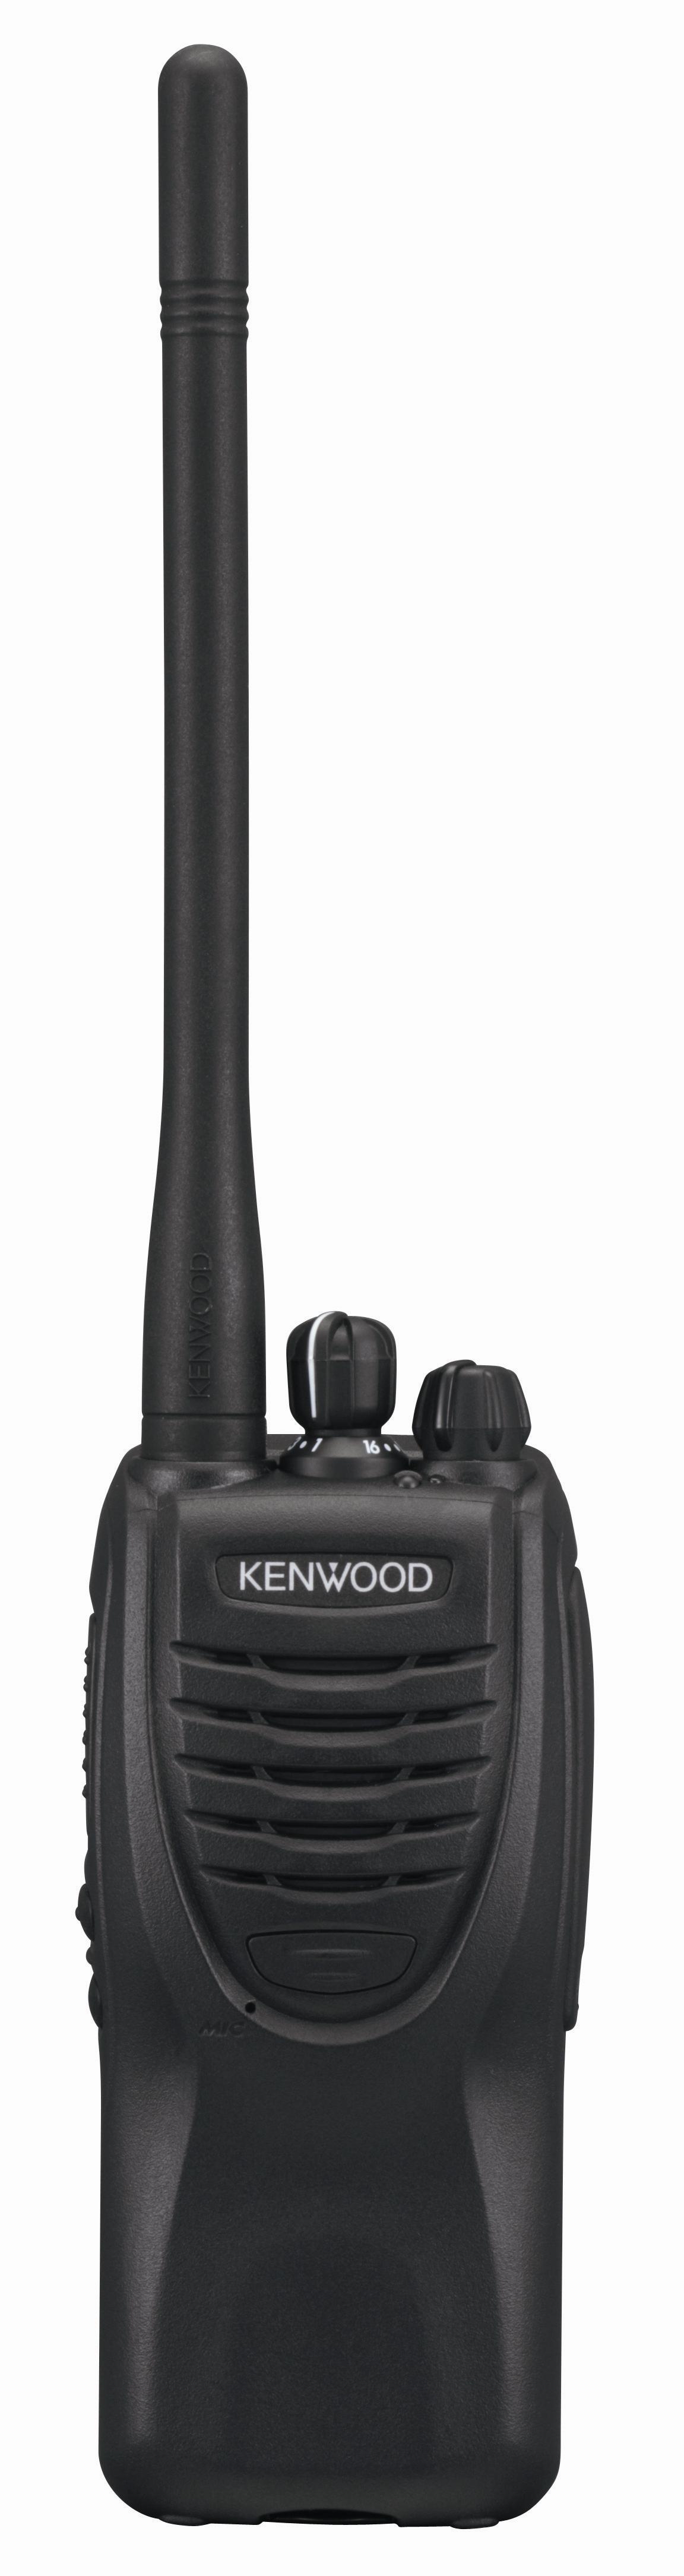 Kenwood TK-3302T UHF FM Portable Entry-level Radio Package (UK u